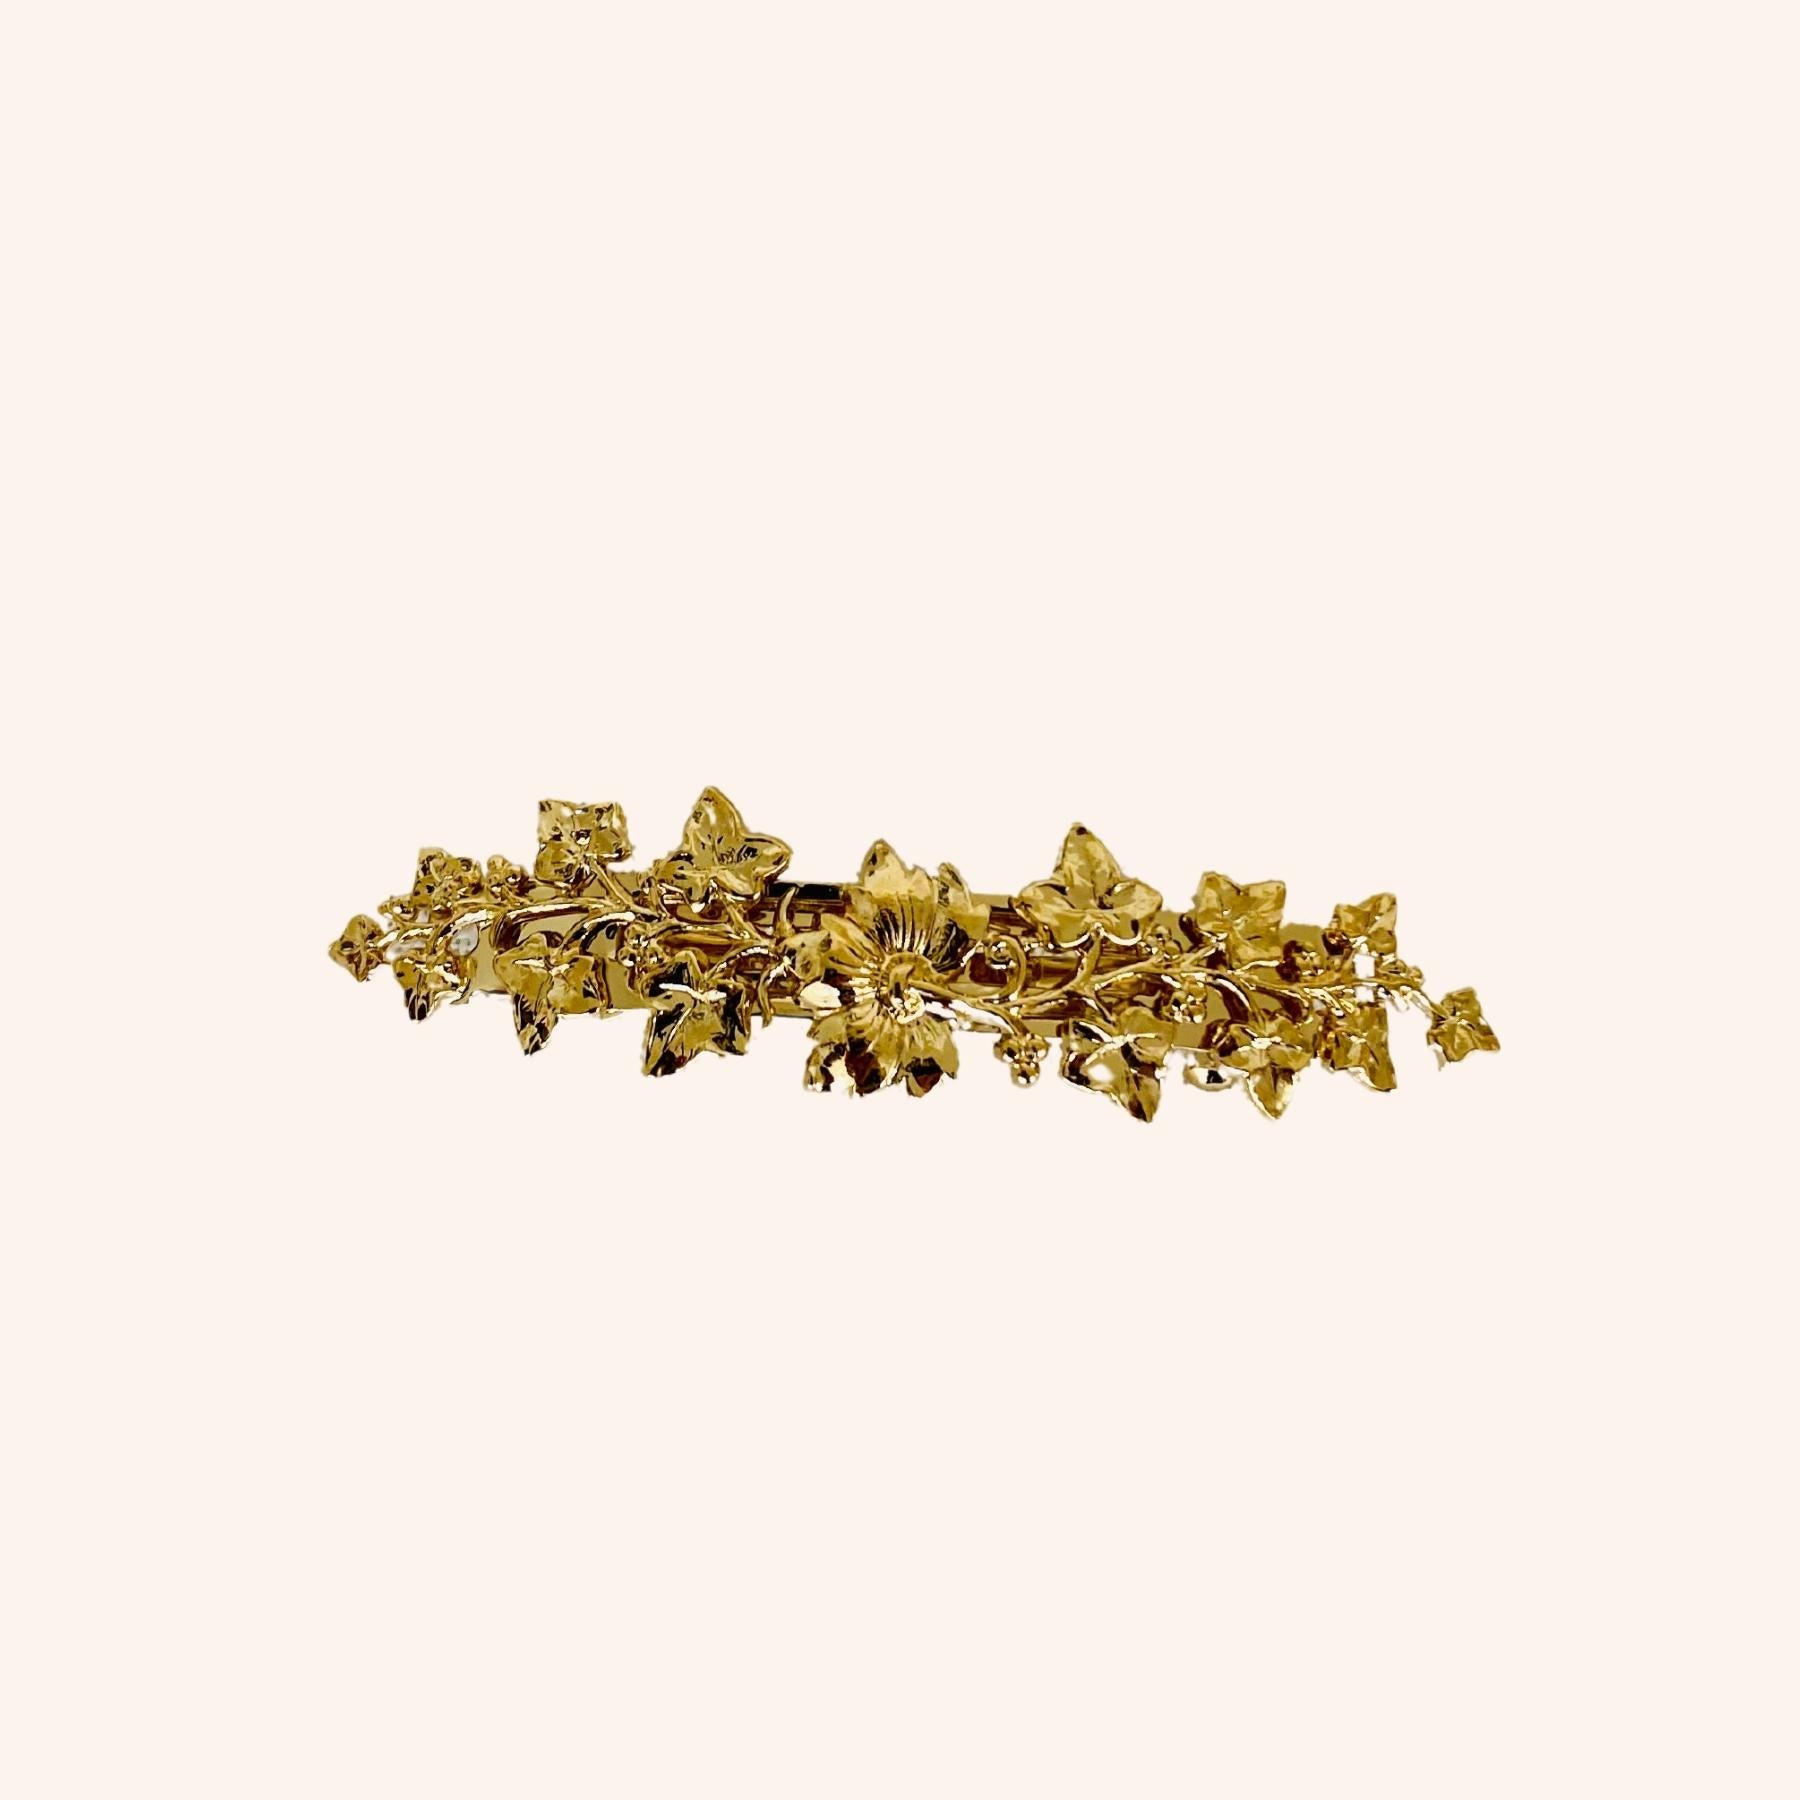 Petite barrette clip dorée fleurie pour cheveux fins courts